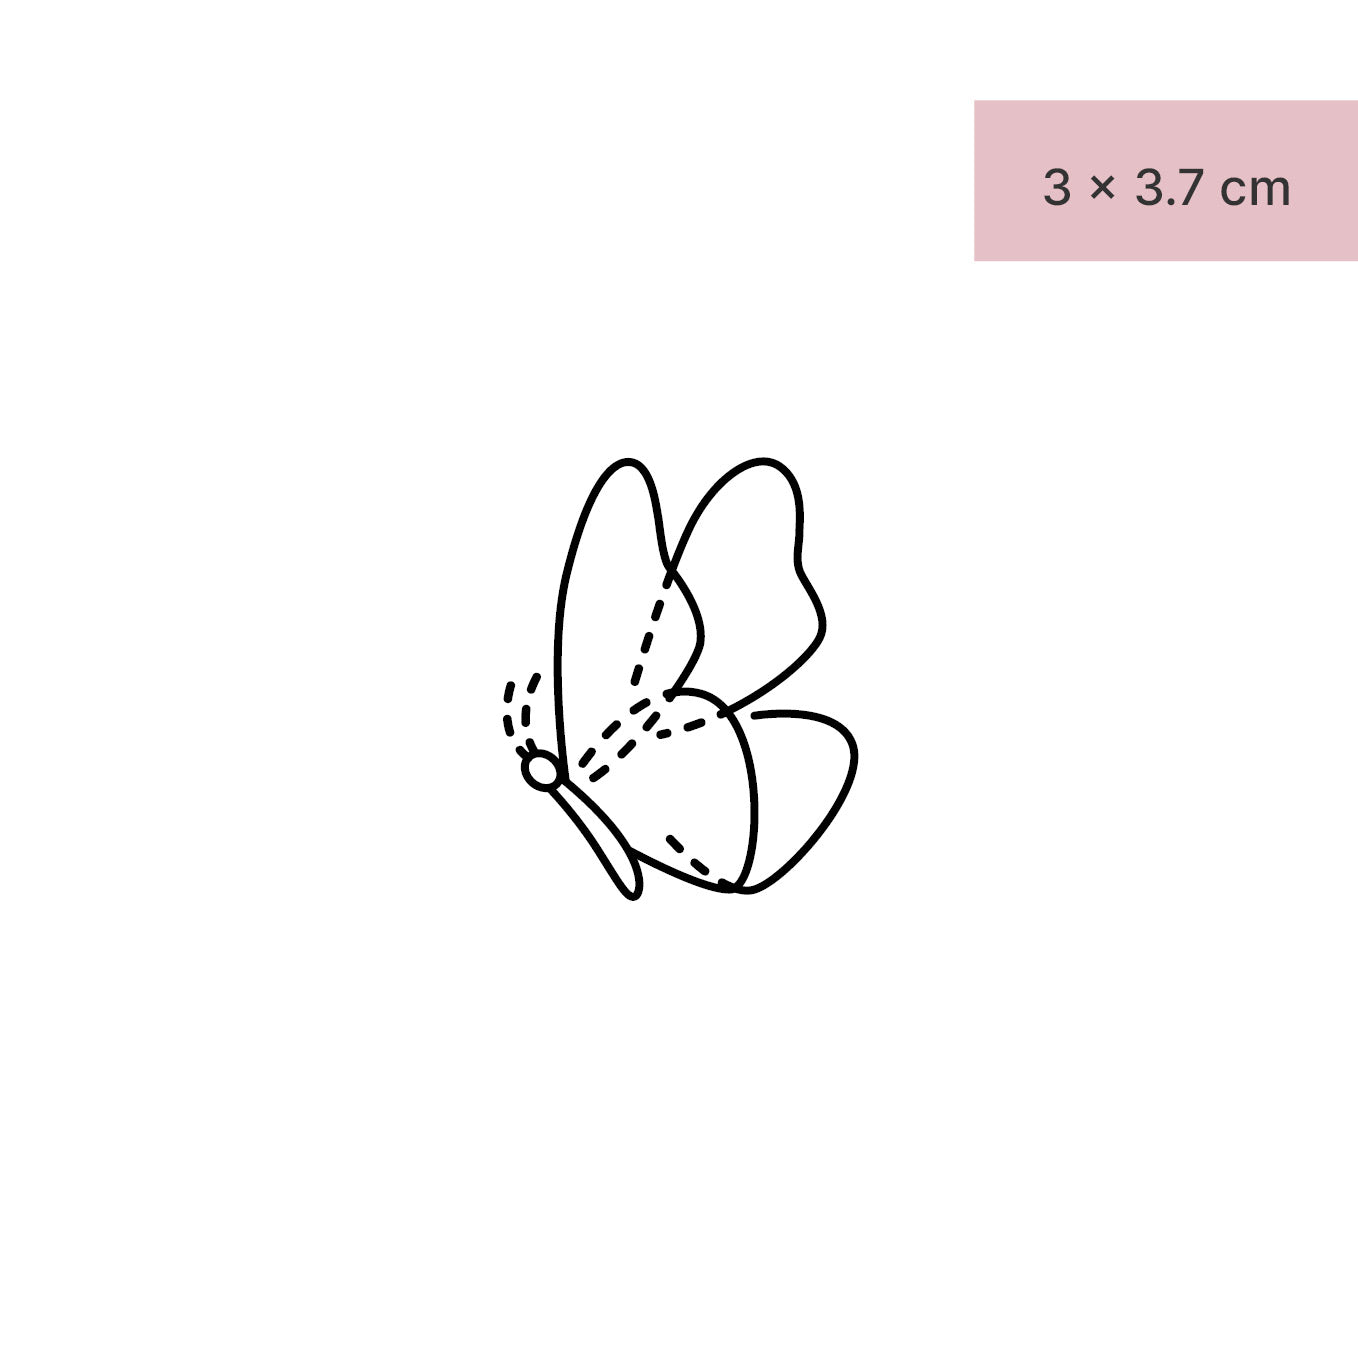 Grosser Schmetterling Tattoo von minink, der Marke für temporäre Tattoos.